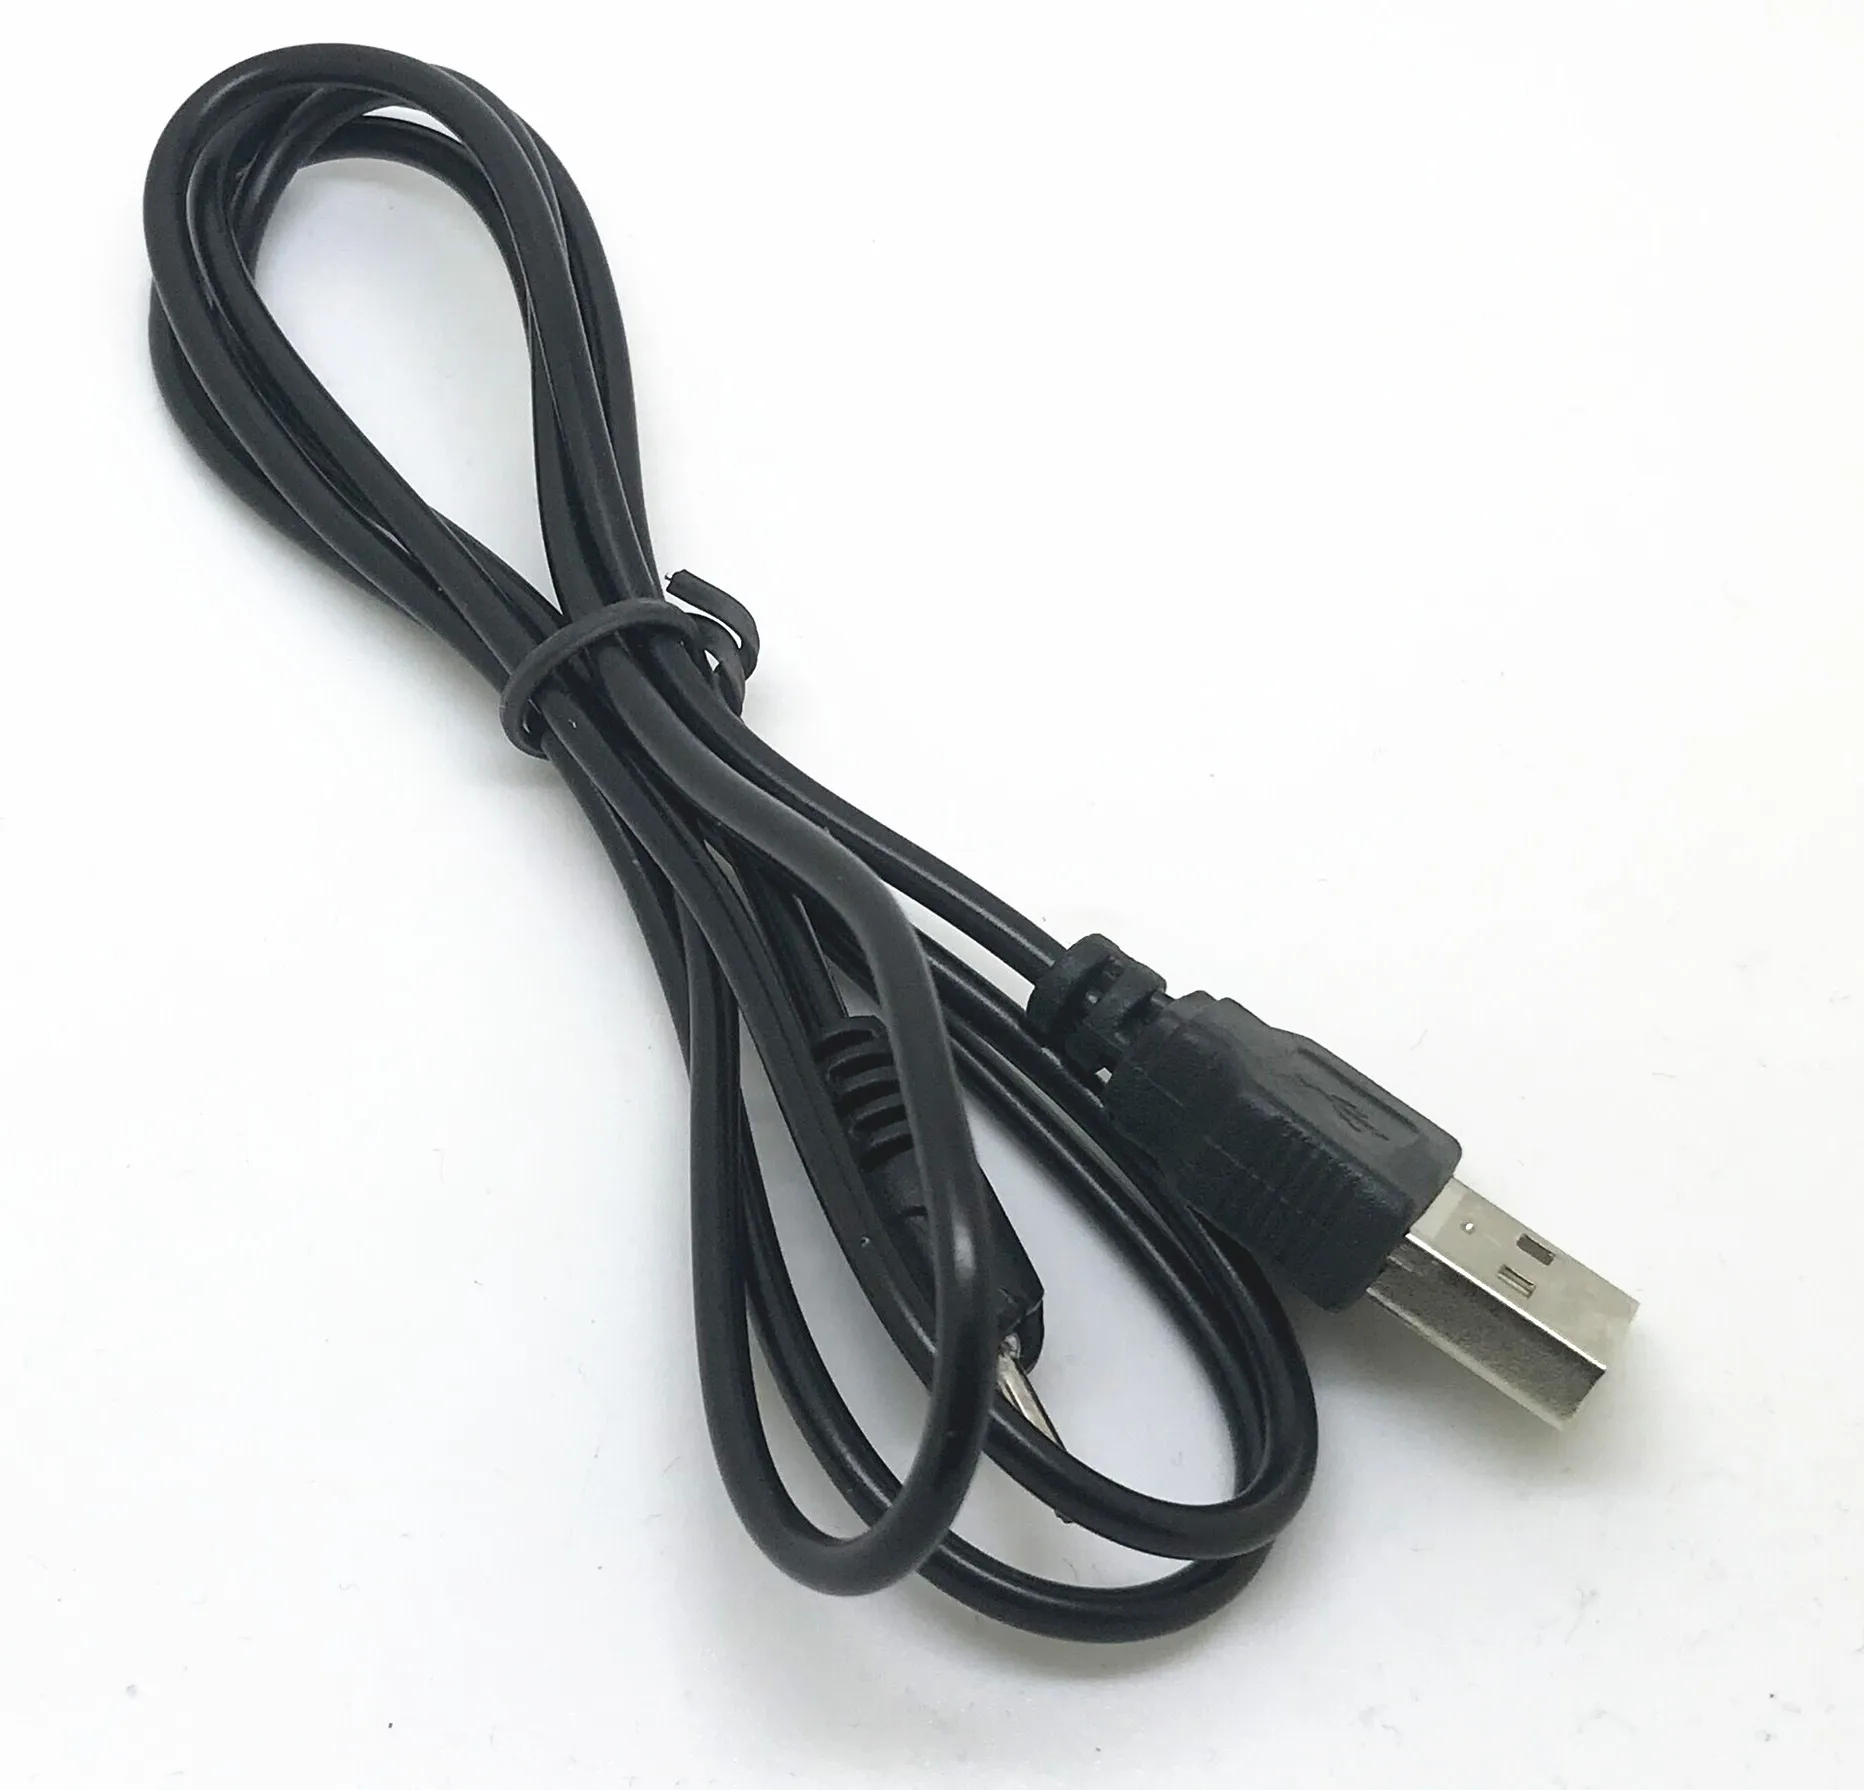 ЕС стены CA-100C Зарядное устройство USB кабель для nokia 6102 6102i 6103 6110 навигатор 6111 6120 классический 6121 классический 6125